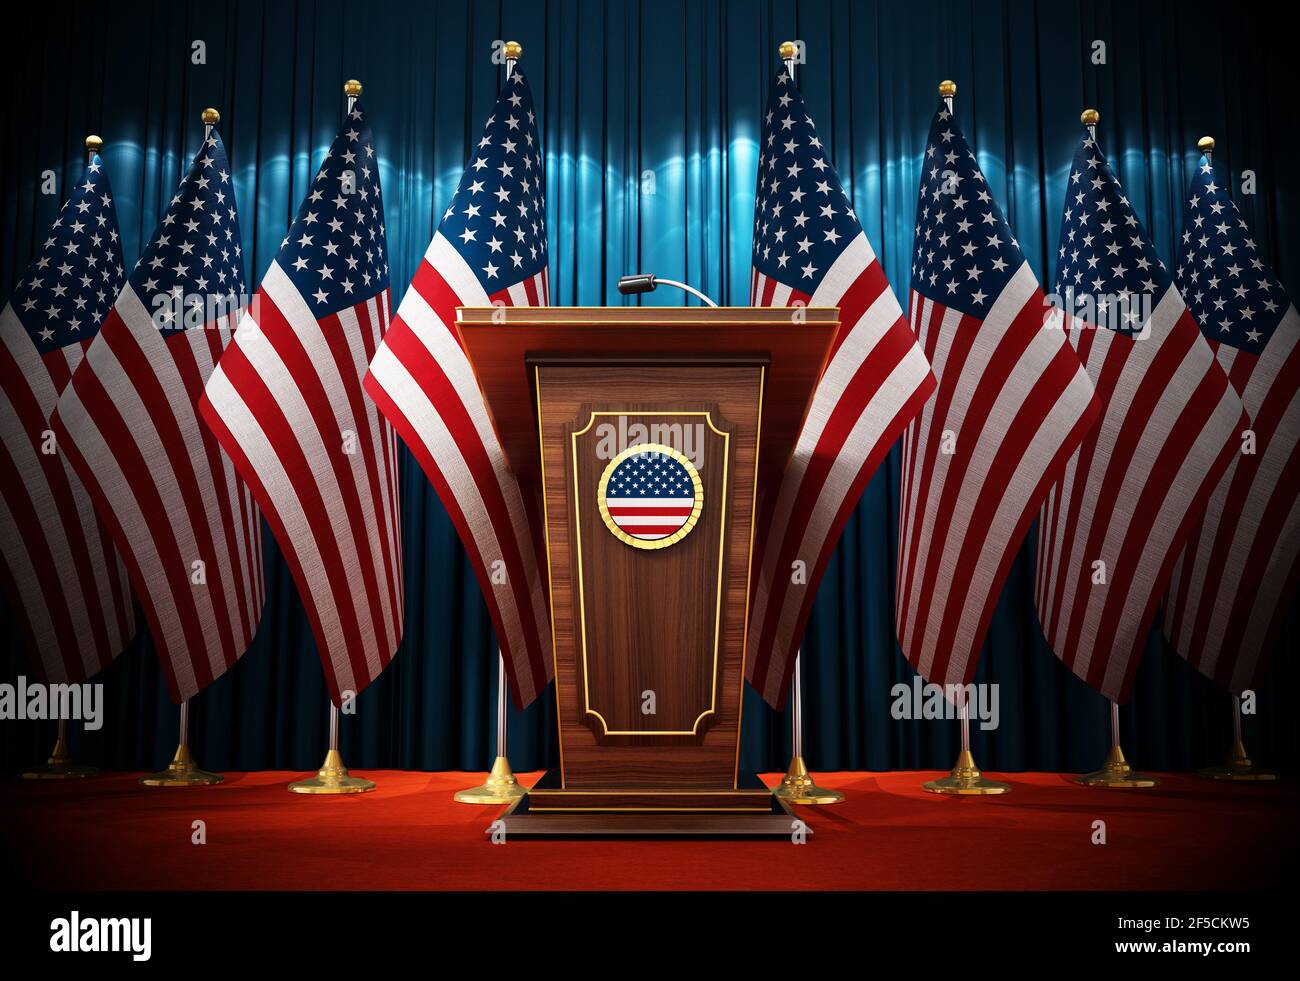 Gruppe amerikanischer Flaggen, die neben dem Rednerpult im Konferenzsaal stehen. 3D Abbildung. Stockfoto